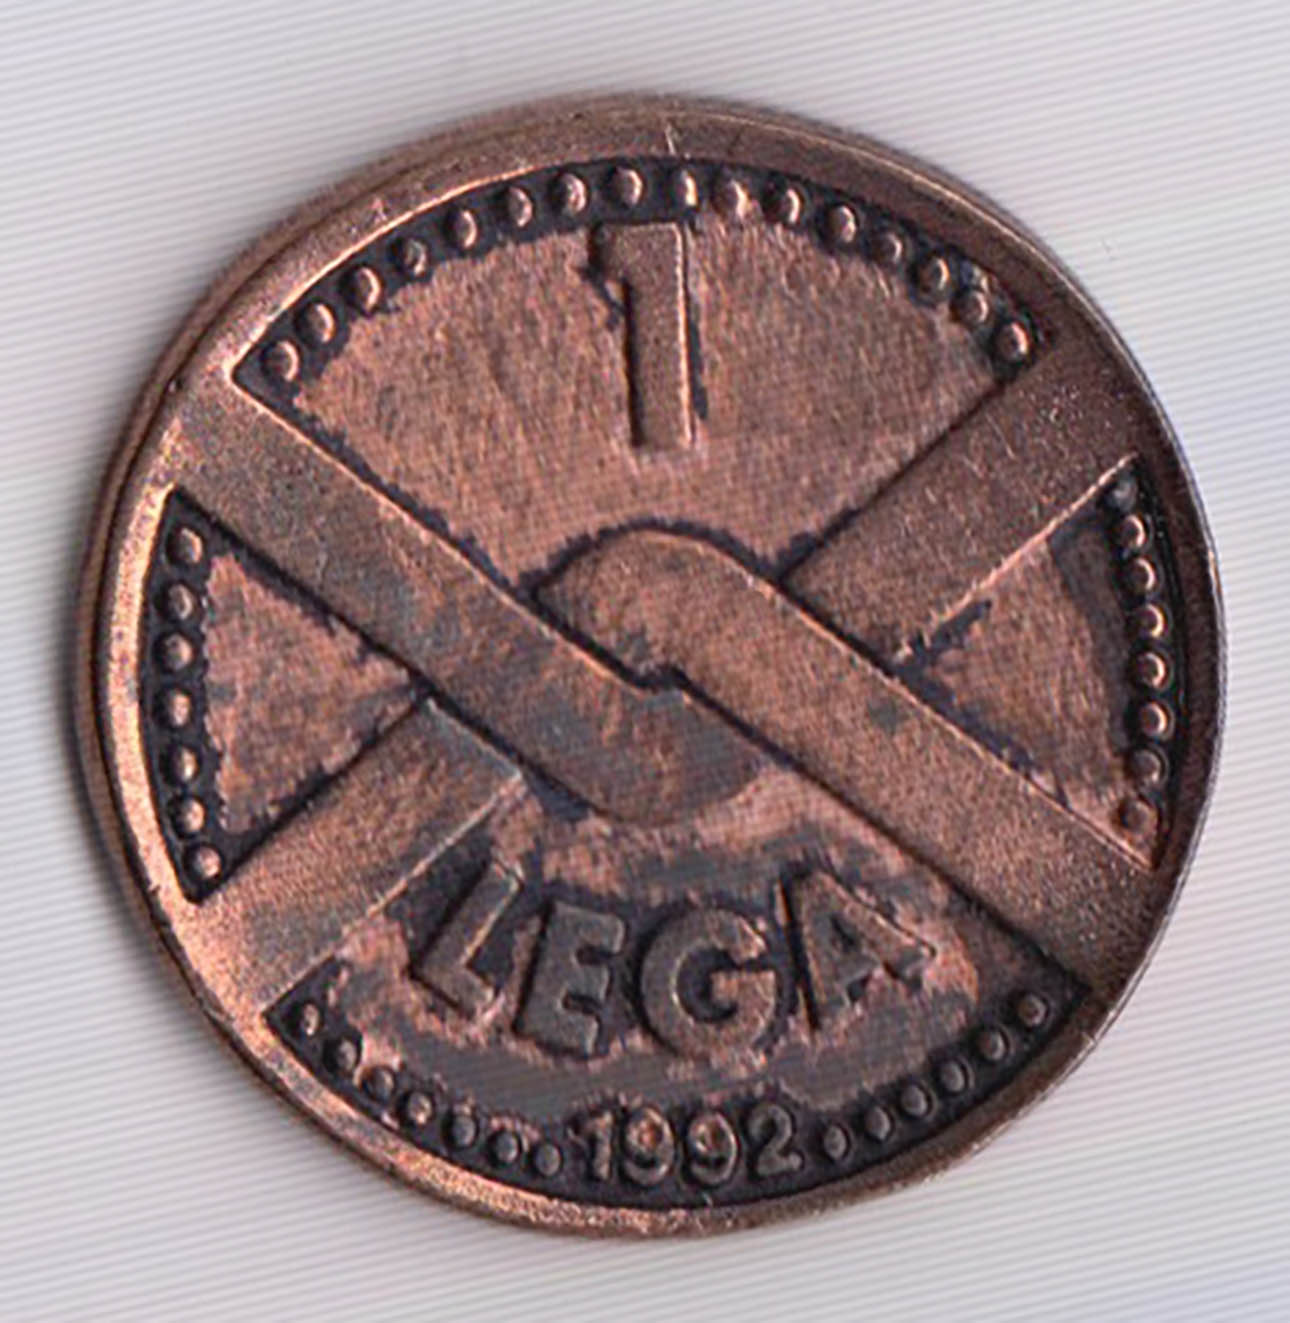 Moneta medaglia da 1 Lega 1992 con raffigurato ALBERTO da GIUSSANO